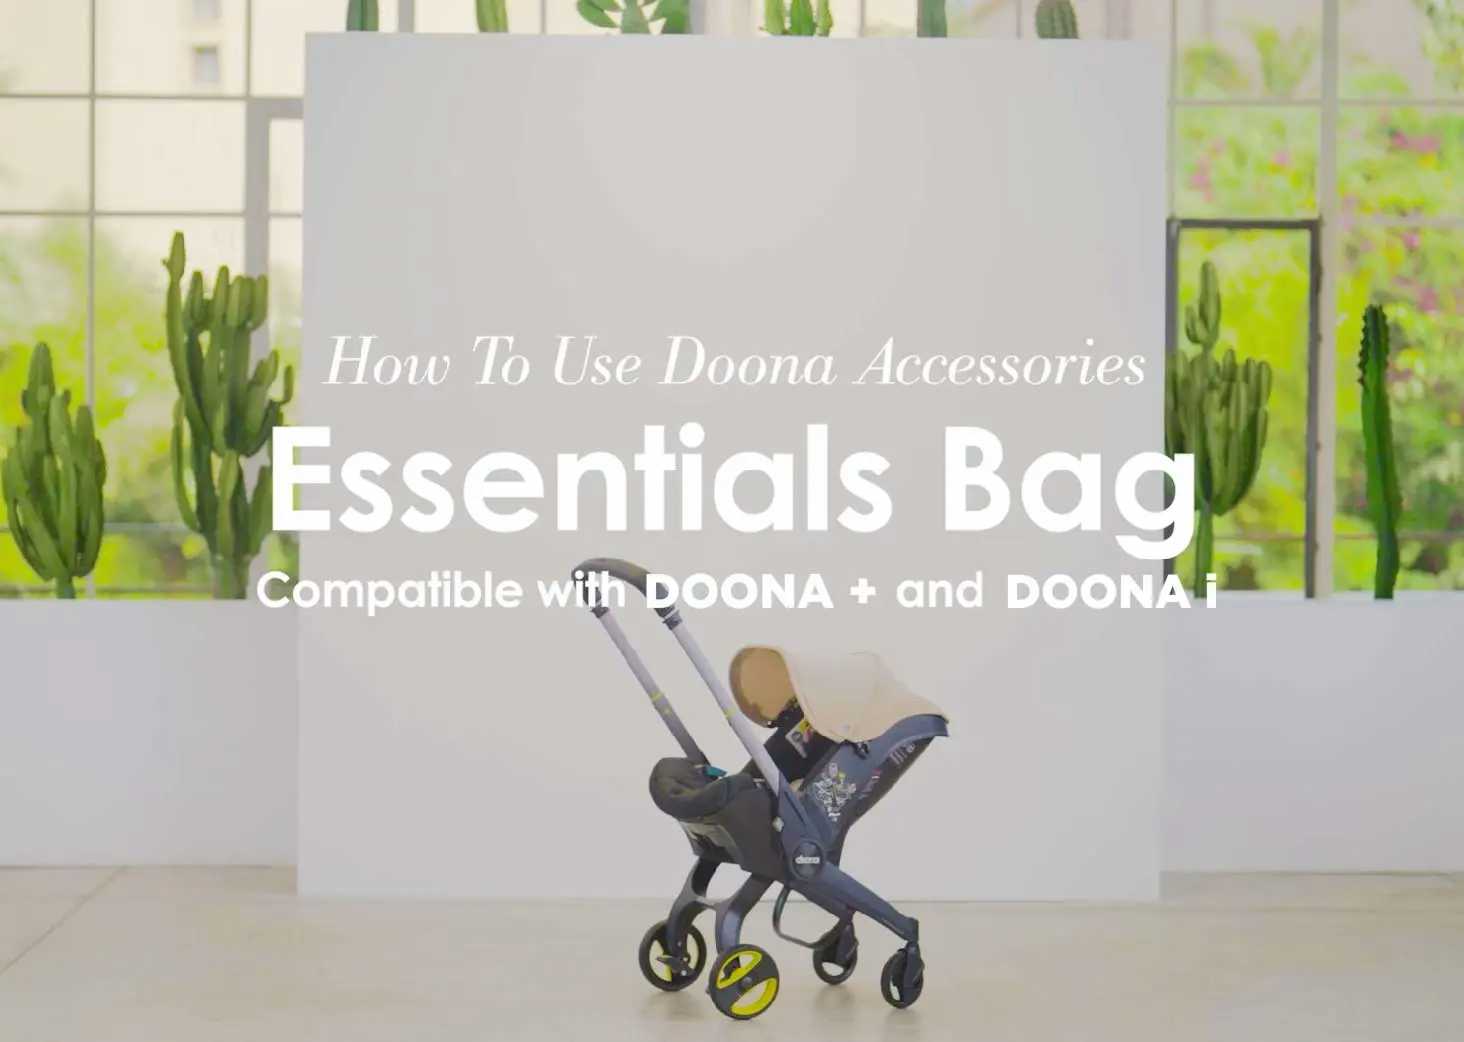 Doona i - Essentials bag